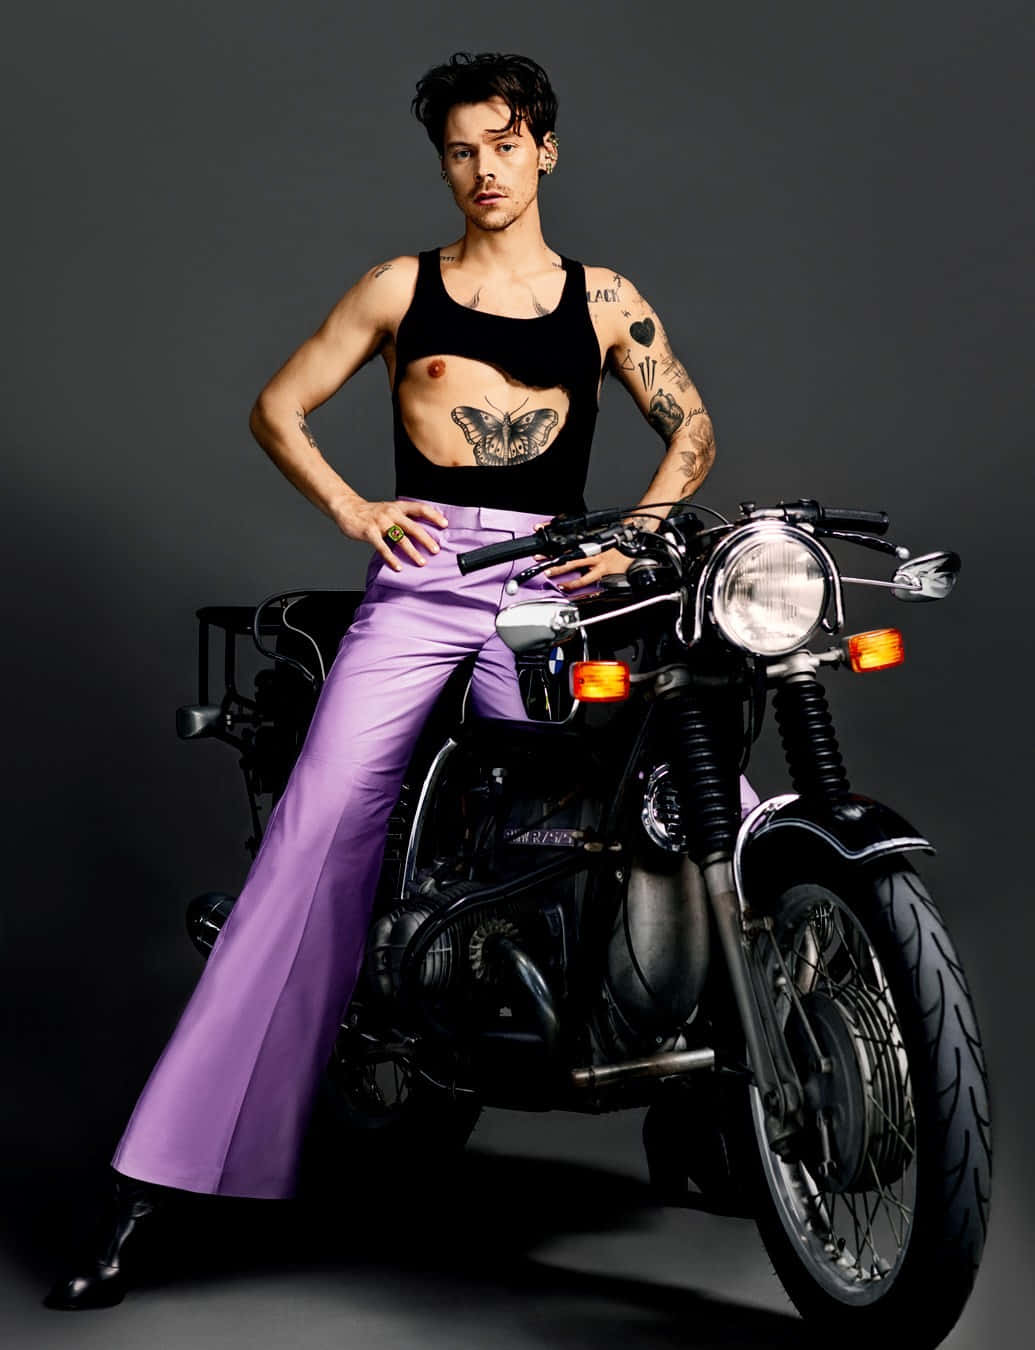 Unadonna Con Tatuaggi In Posa Su Una Motocicletta